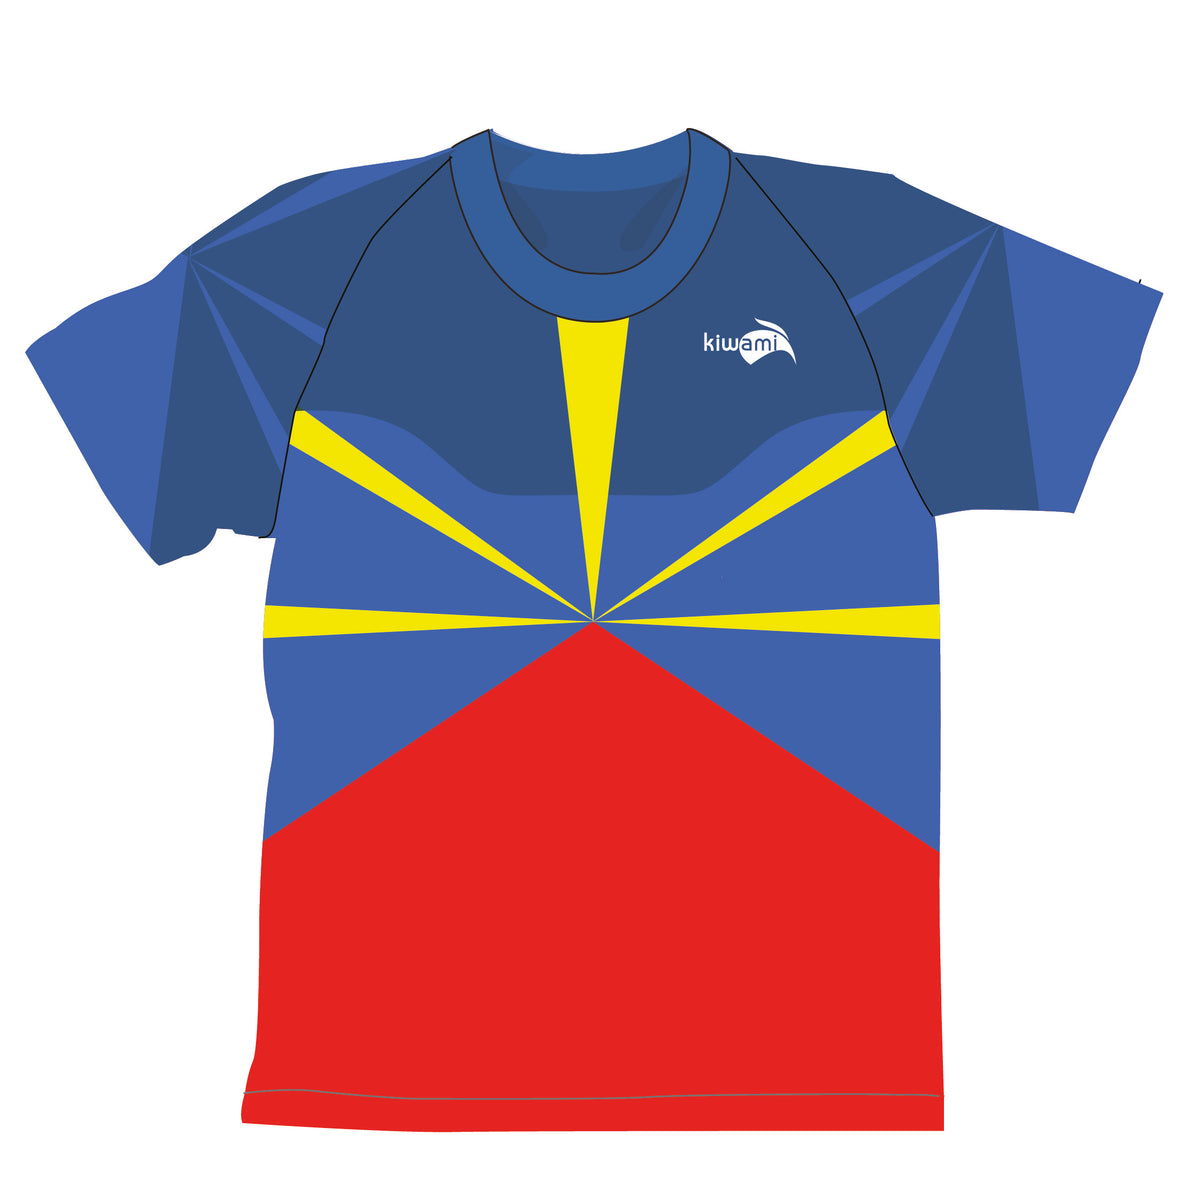 Tee-shirt running homme île de la réunion fabrication française kiwami sports